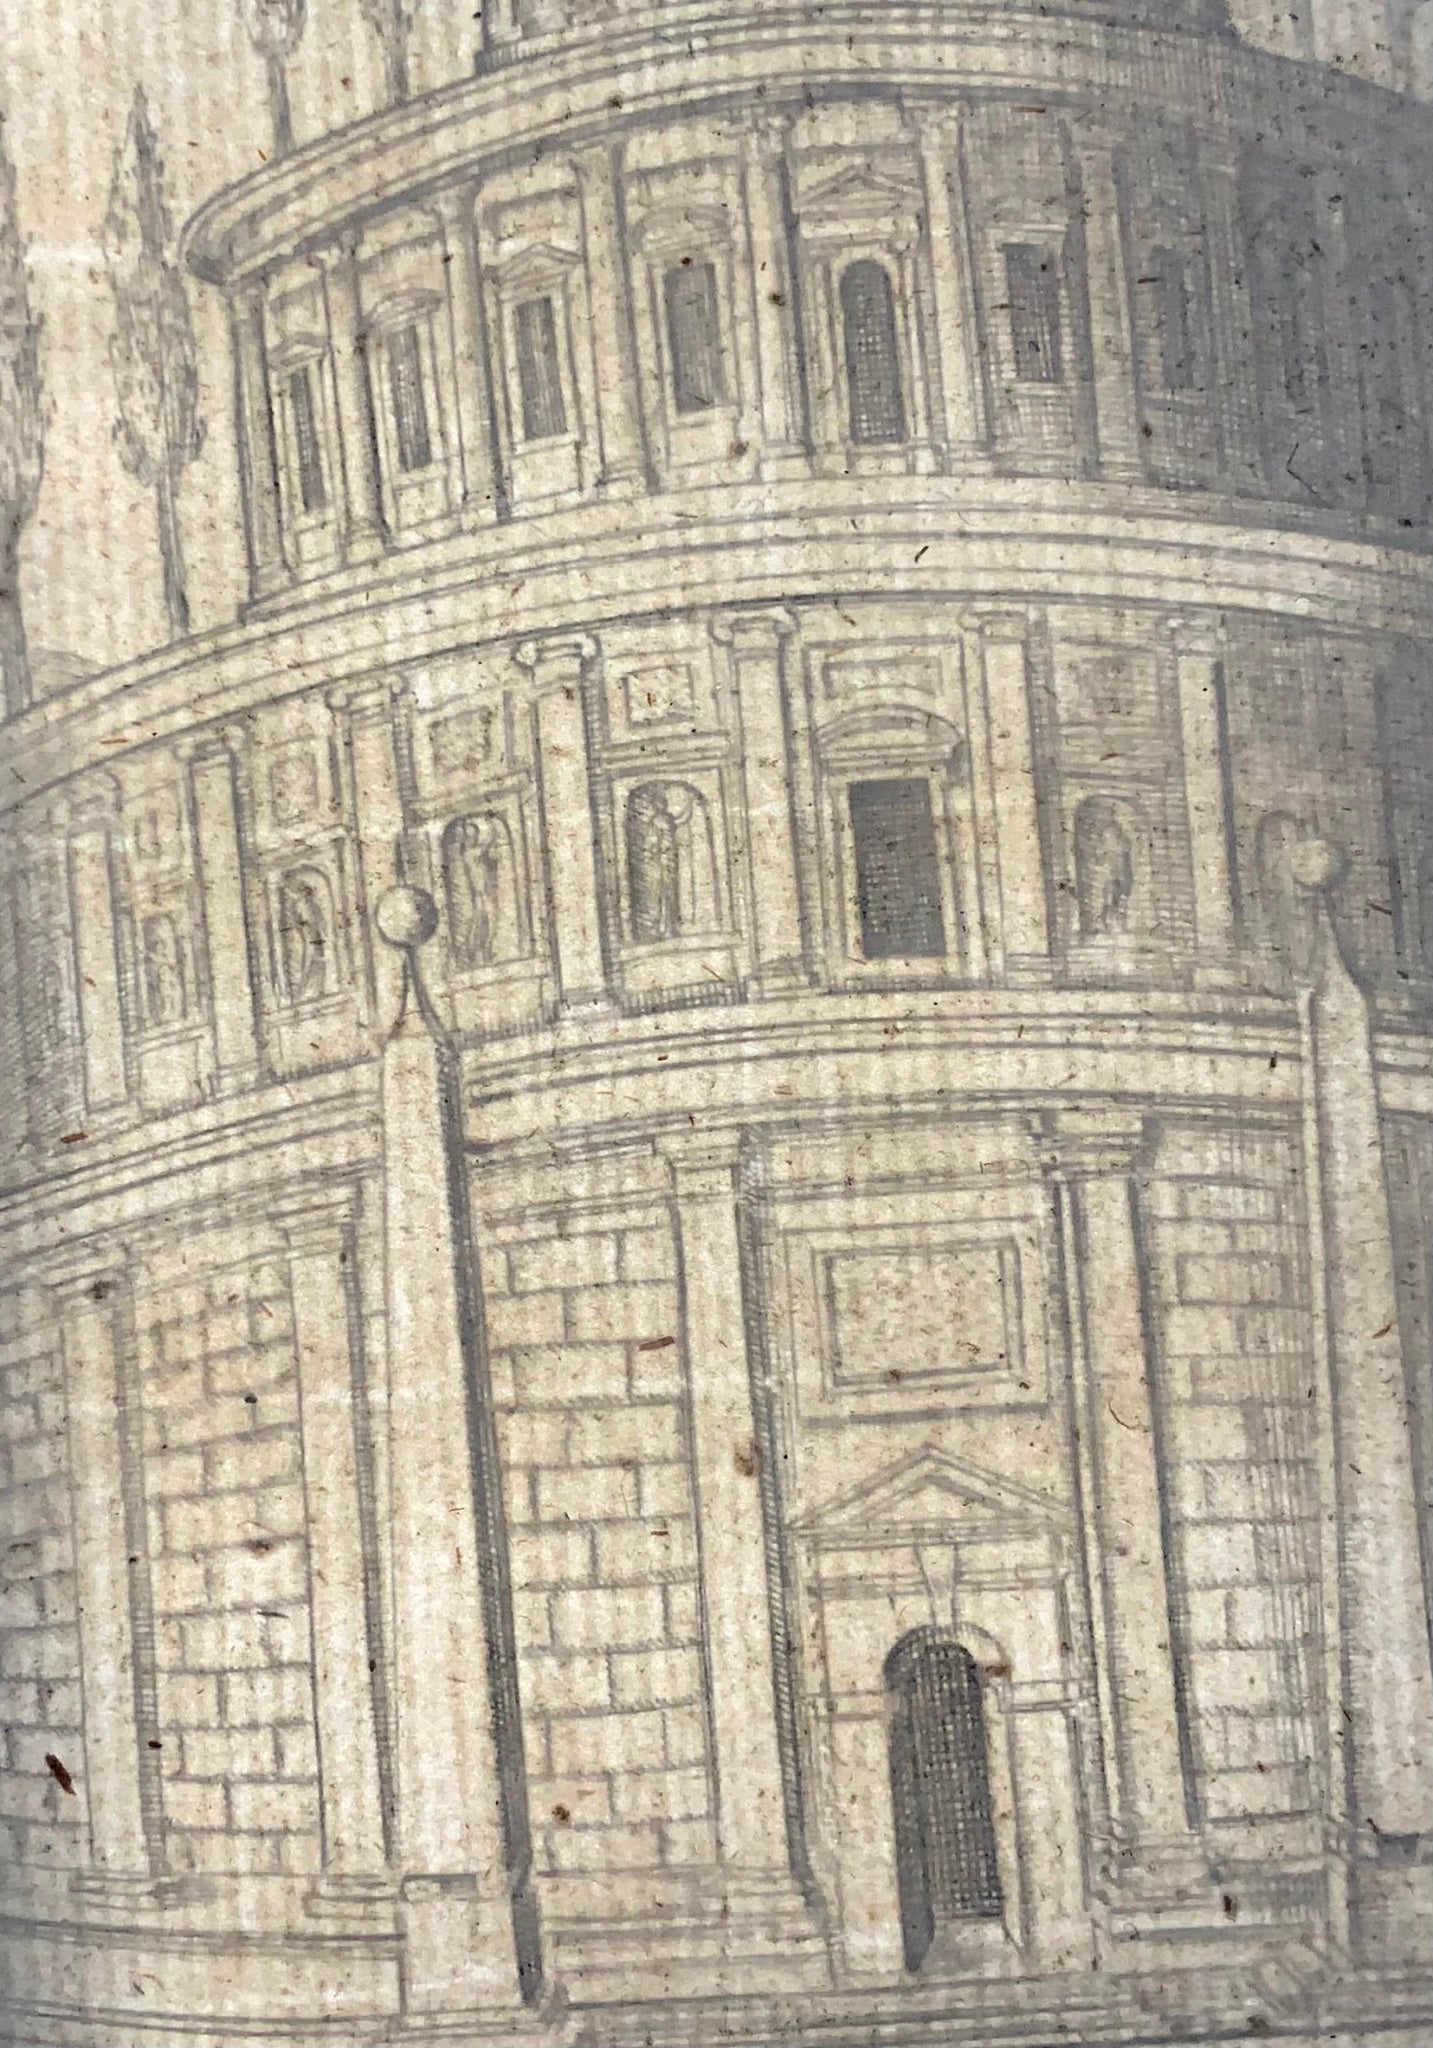 1624 Lauro, Giacomo, Mausoleum of Augustus, folio, copper engraving, Rome, Italy, classical architecture